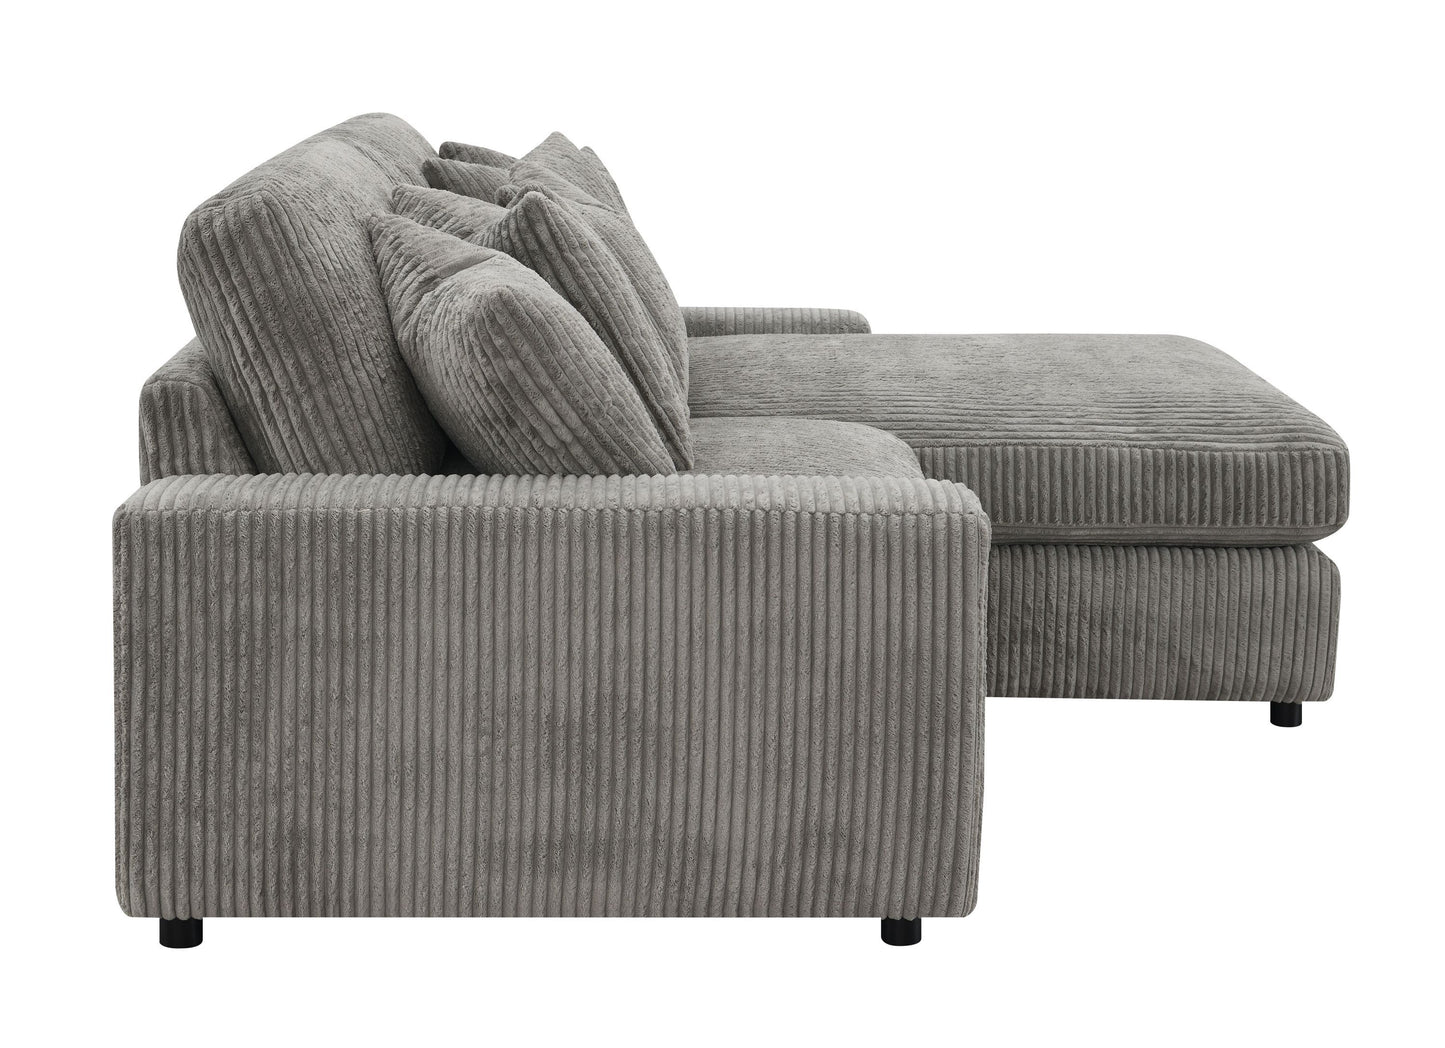 ACME Tavia Corduroy Sectional Sofa w/6 Pillows, Gray